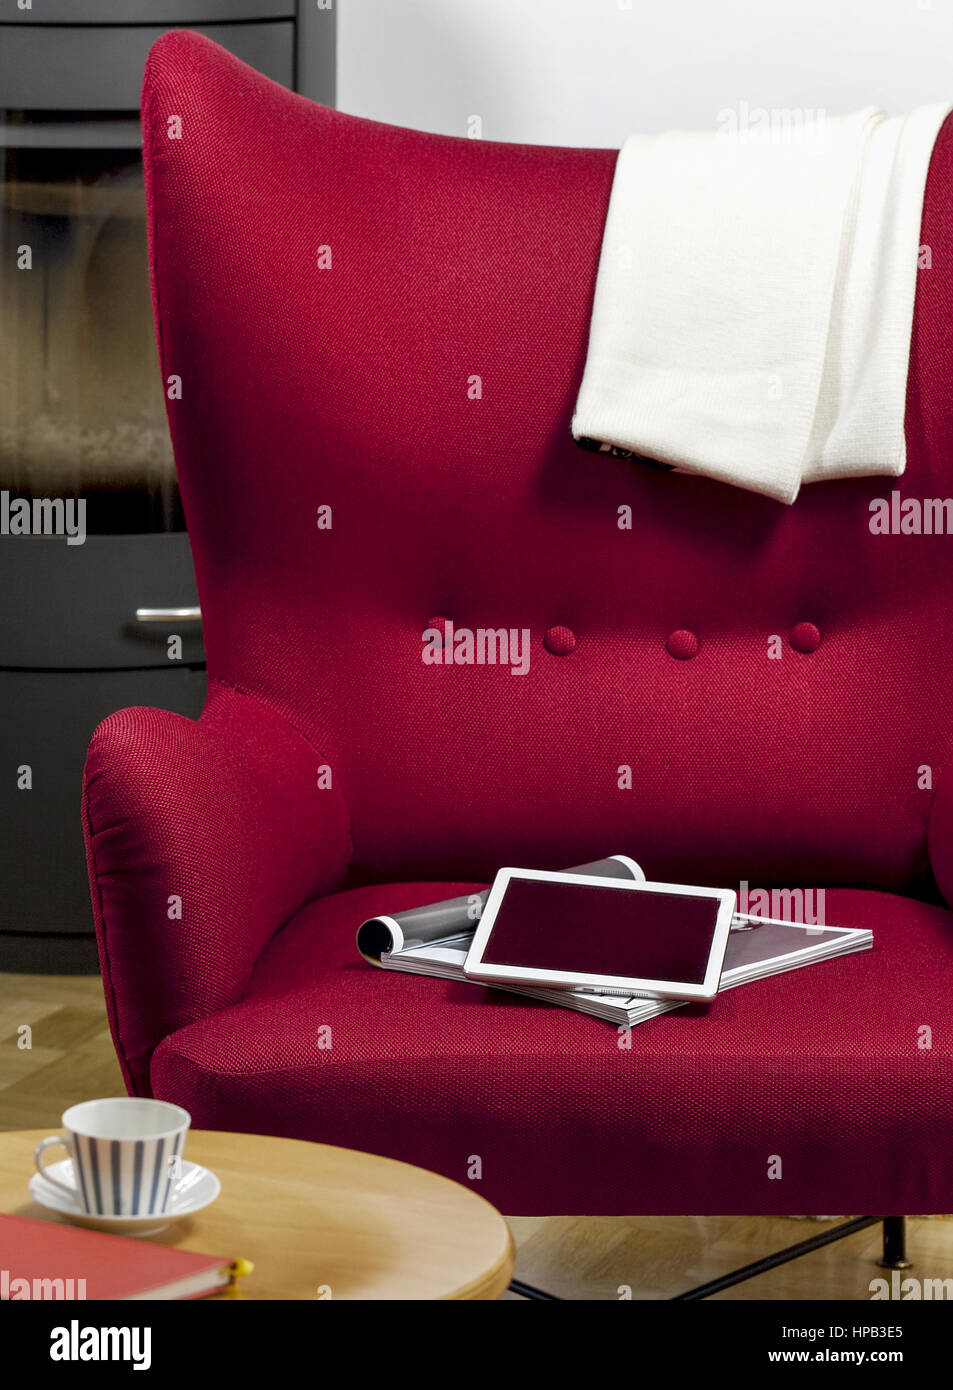 Tablet-PC und Zeitschrift liegen auf rotem Sessel Stock Photo